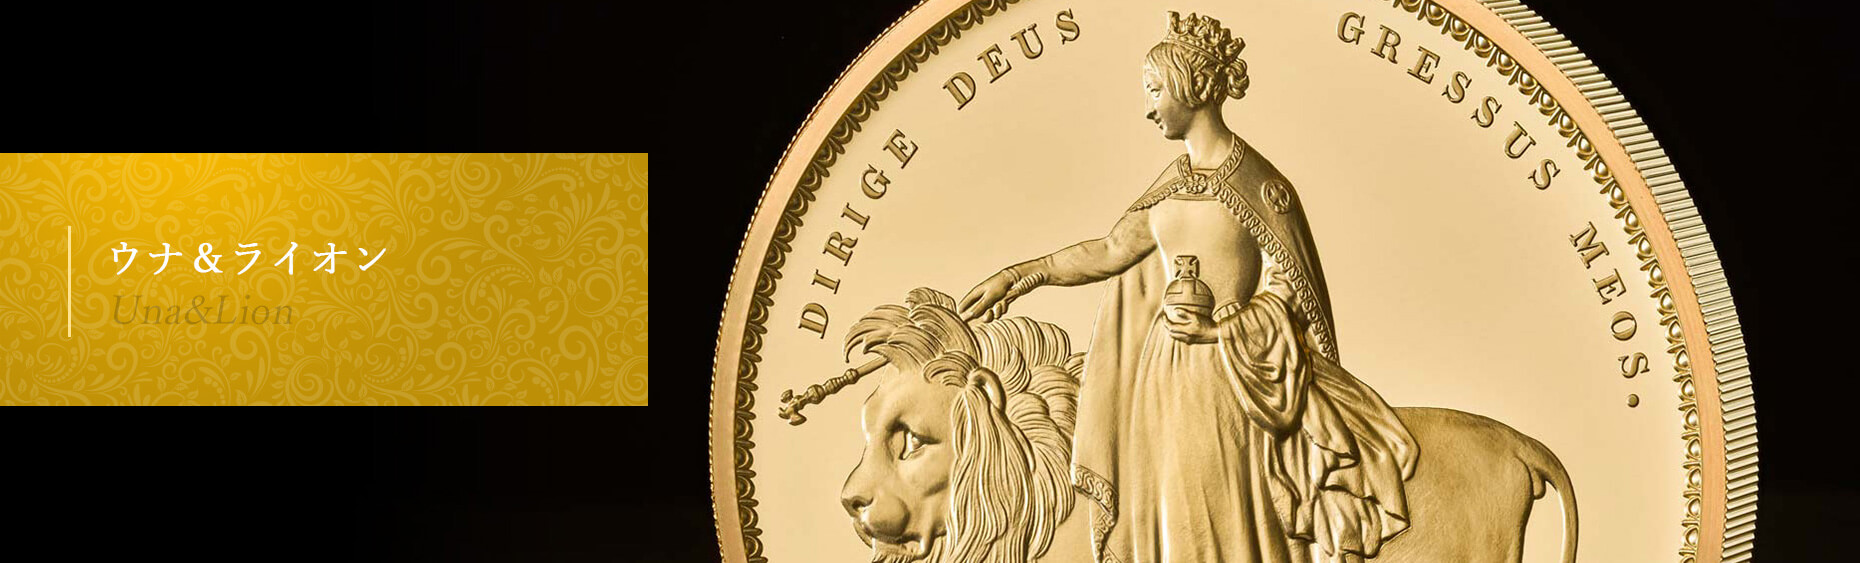 世界で最も美しいコイン「ウナ＆ライオン」 | 英国アンティークコイン専門店「コインパレス」